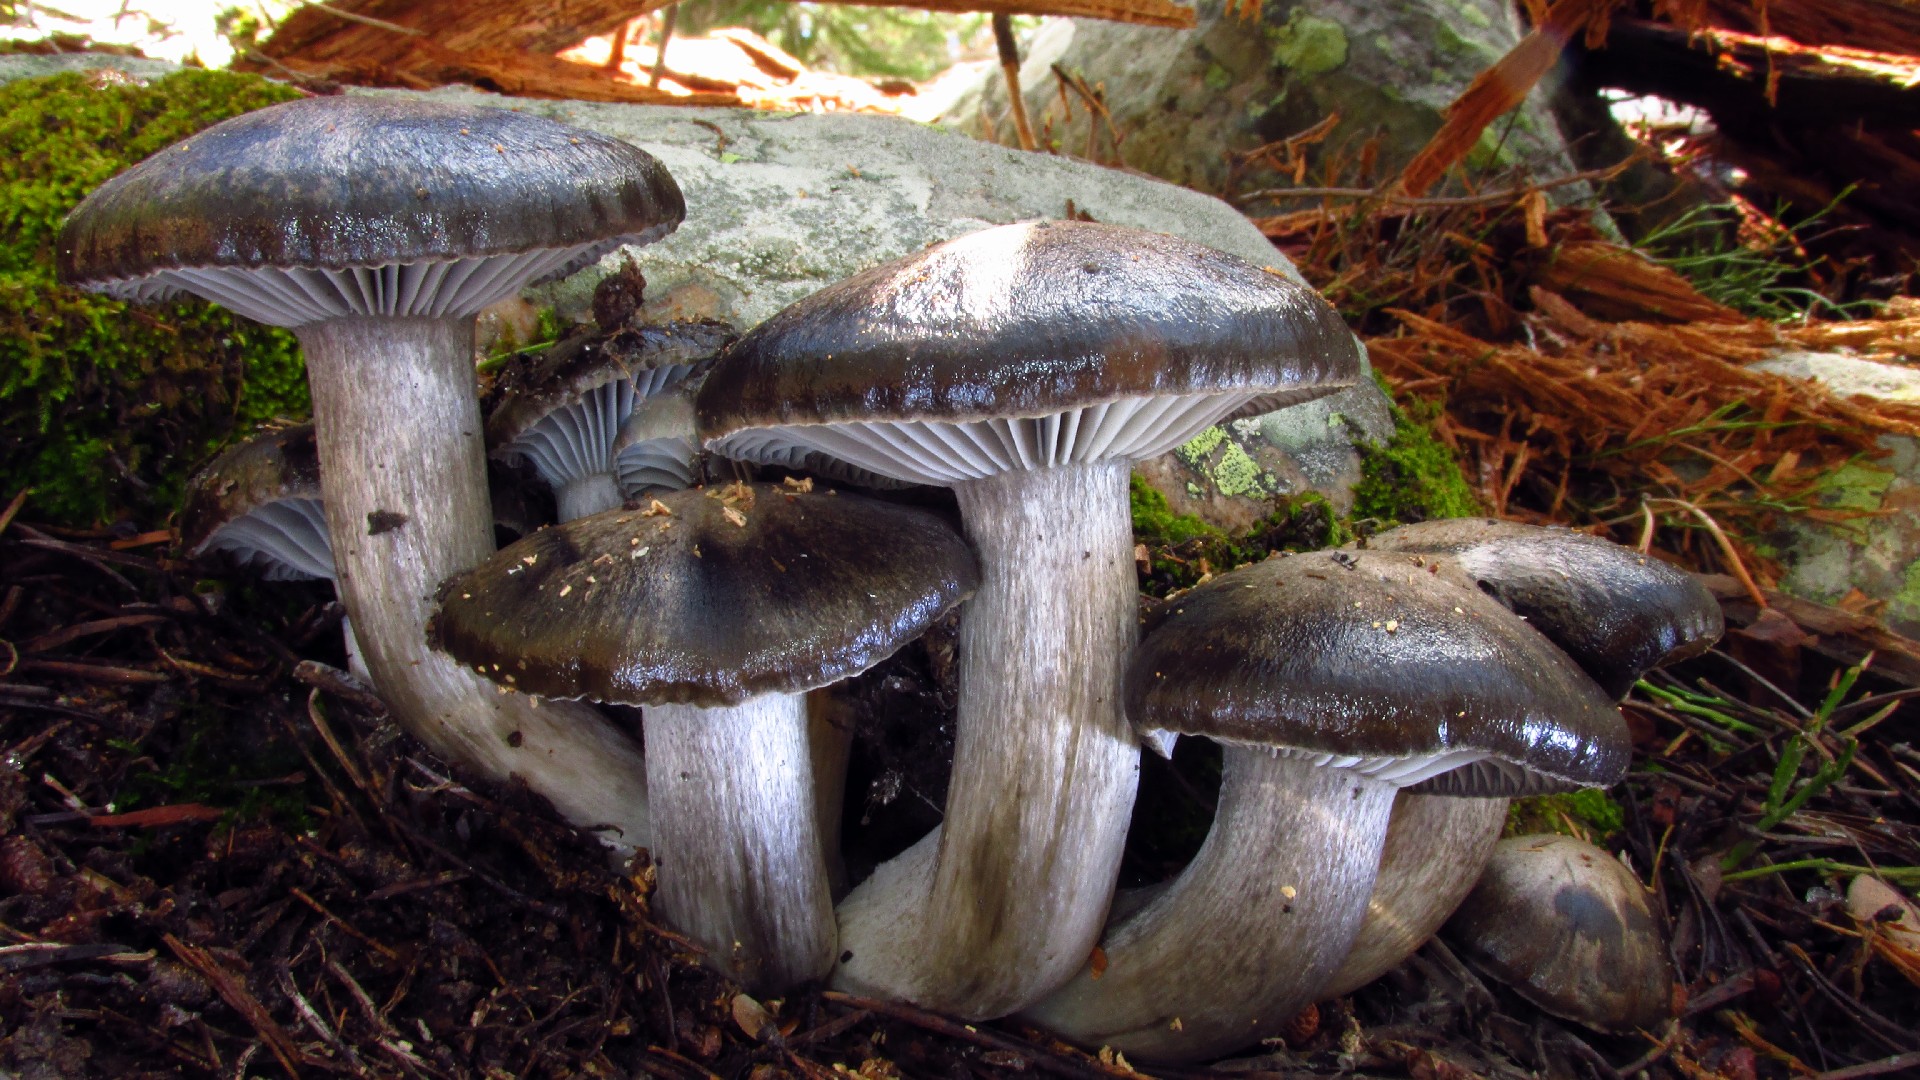 March mushroom